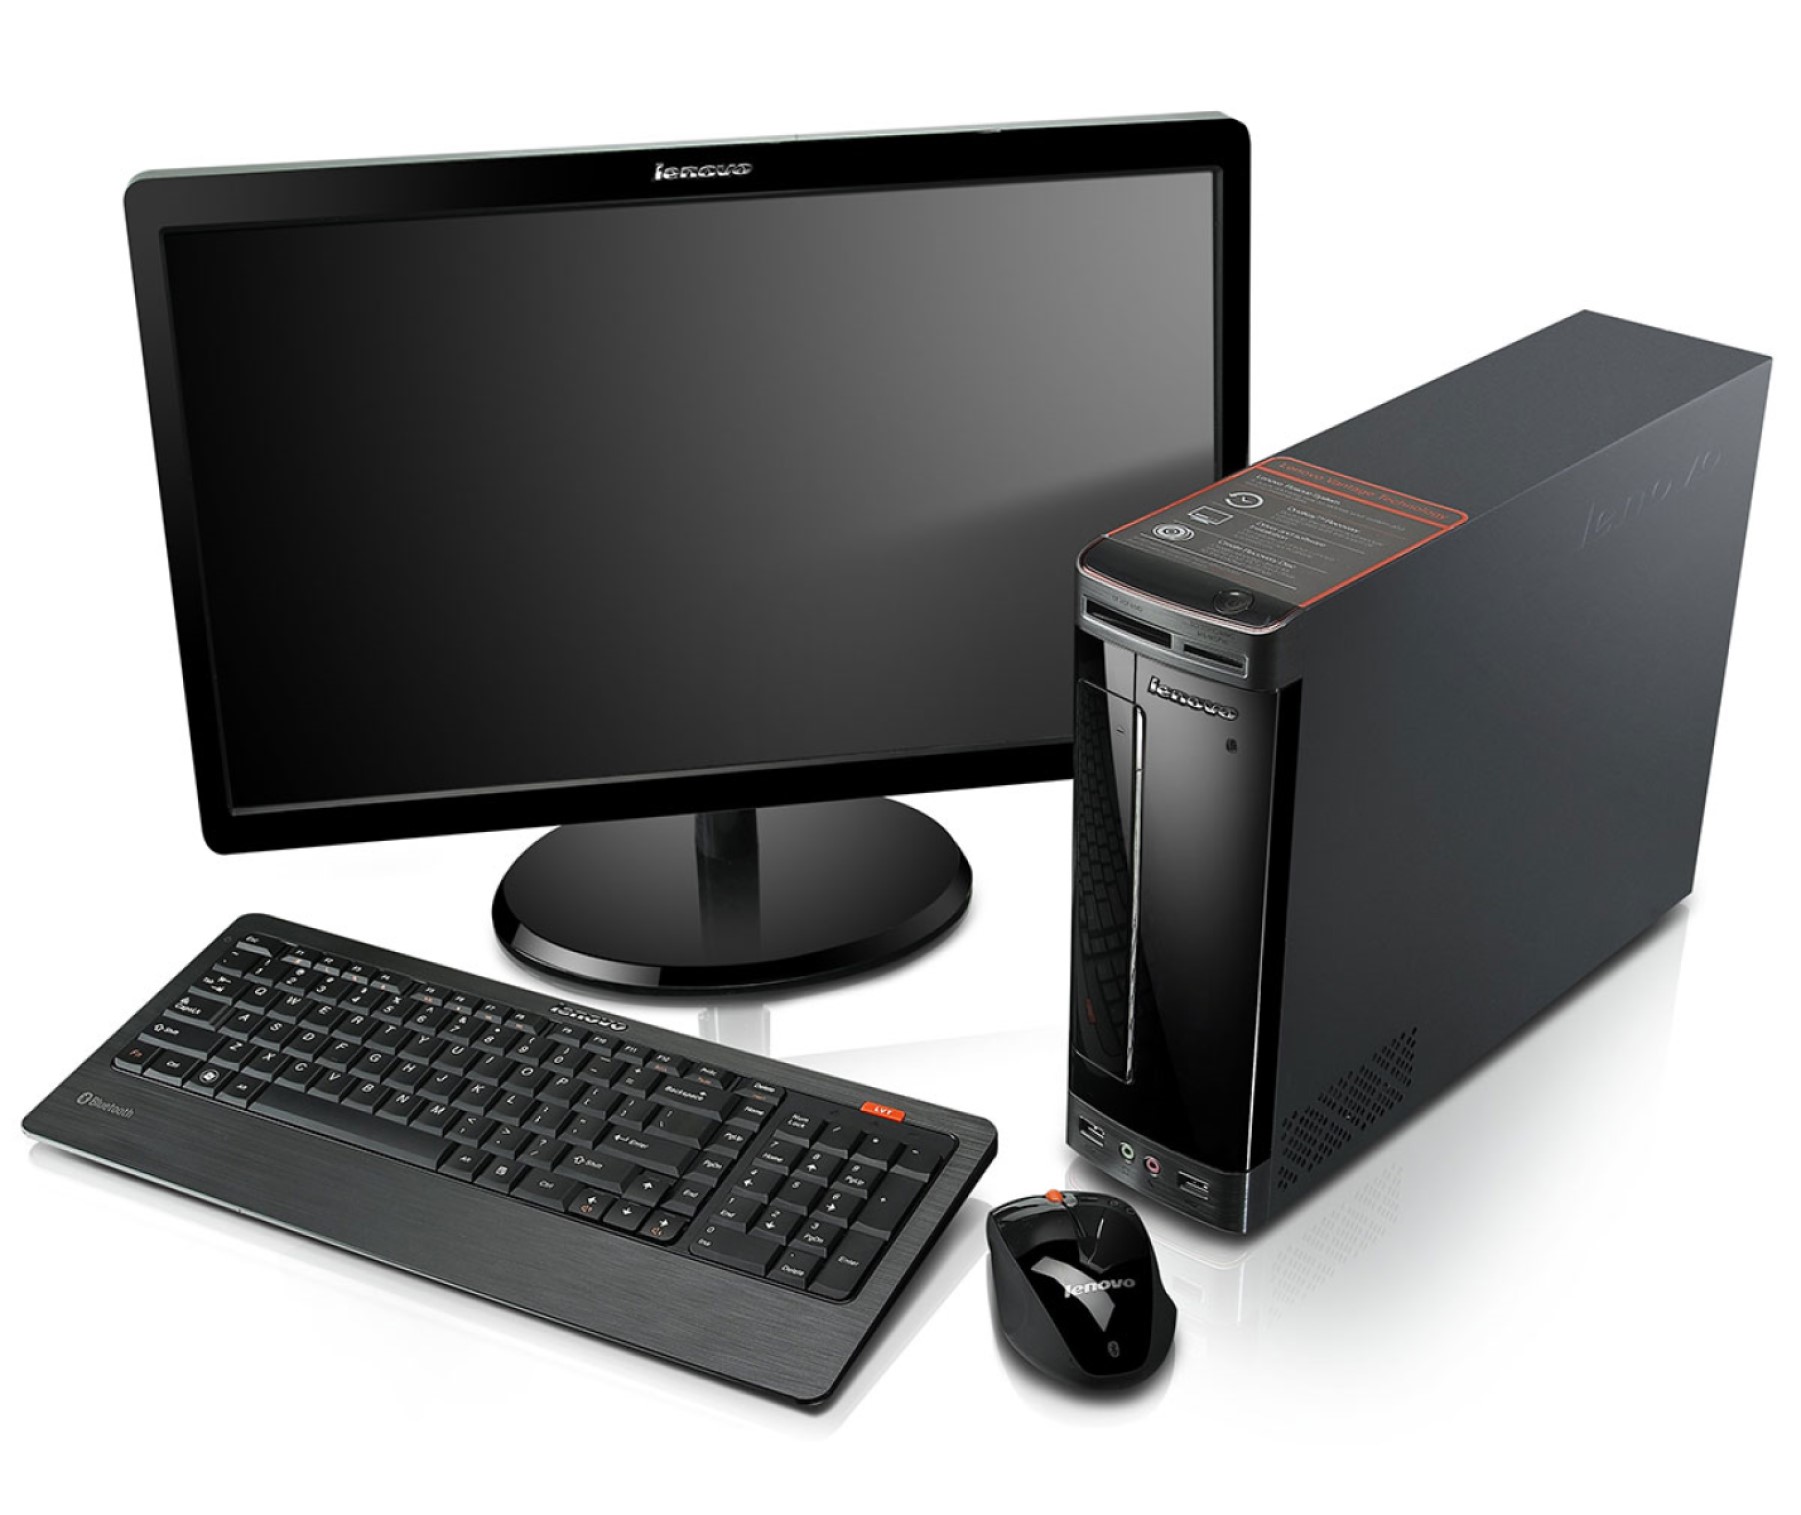 Популярные модели компьютеров. Компьютер (сист. Блок, монитор TFT 27 Acer Black). Инв.. Системный блок монитор клавиатура мышь. Lenovo h320 компьютер. Компьютер (монитор ЖК 22", системный блок, клавиатура, мышь).